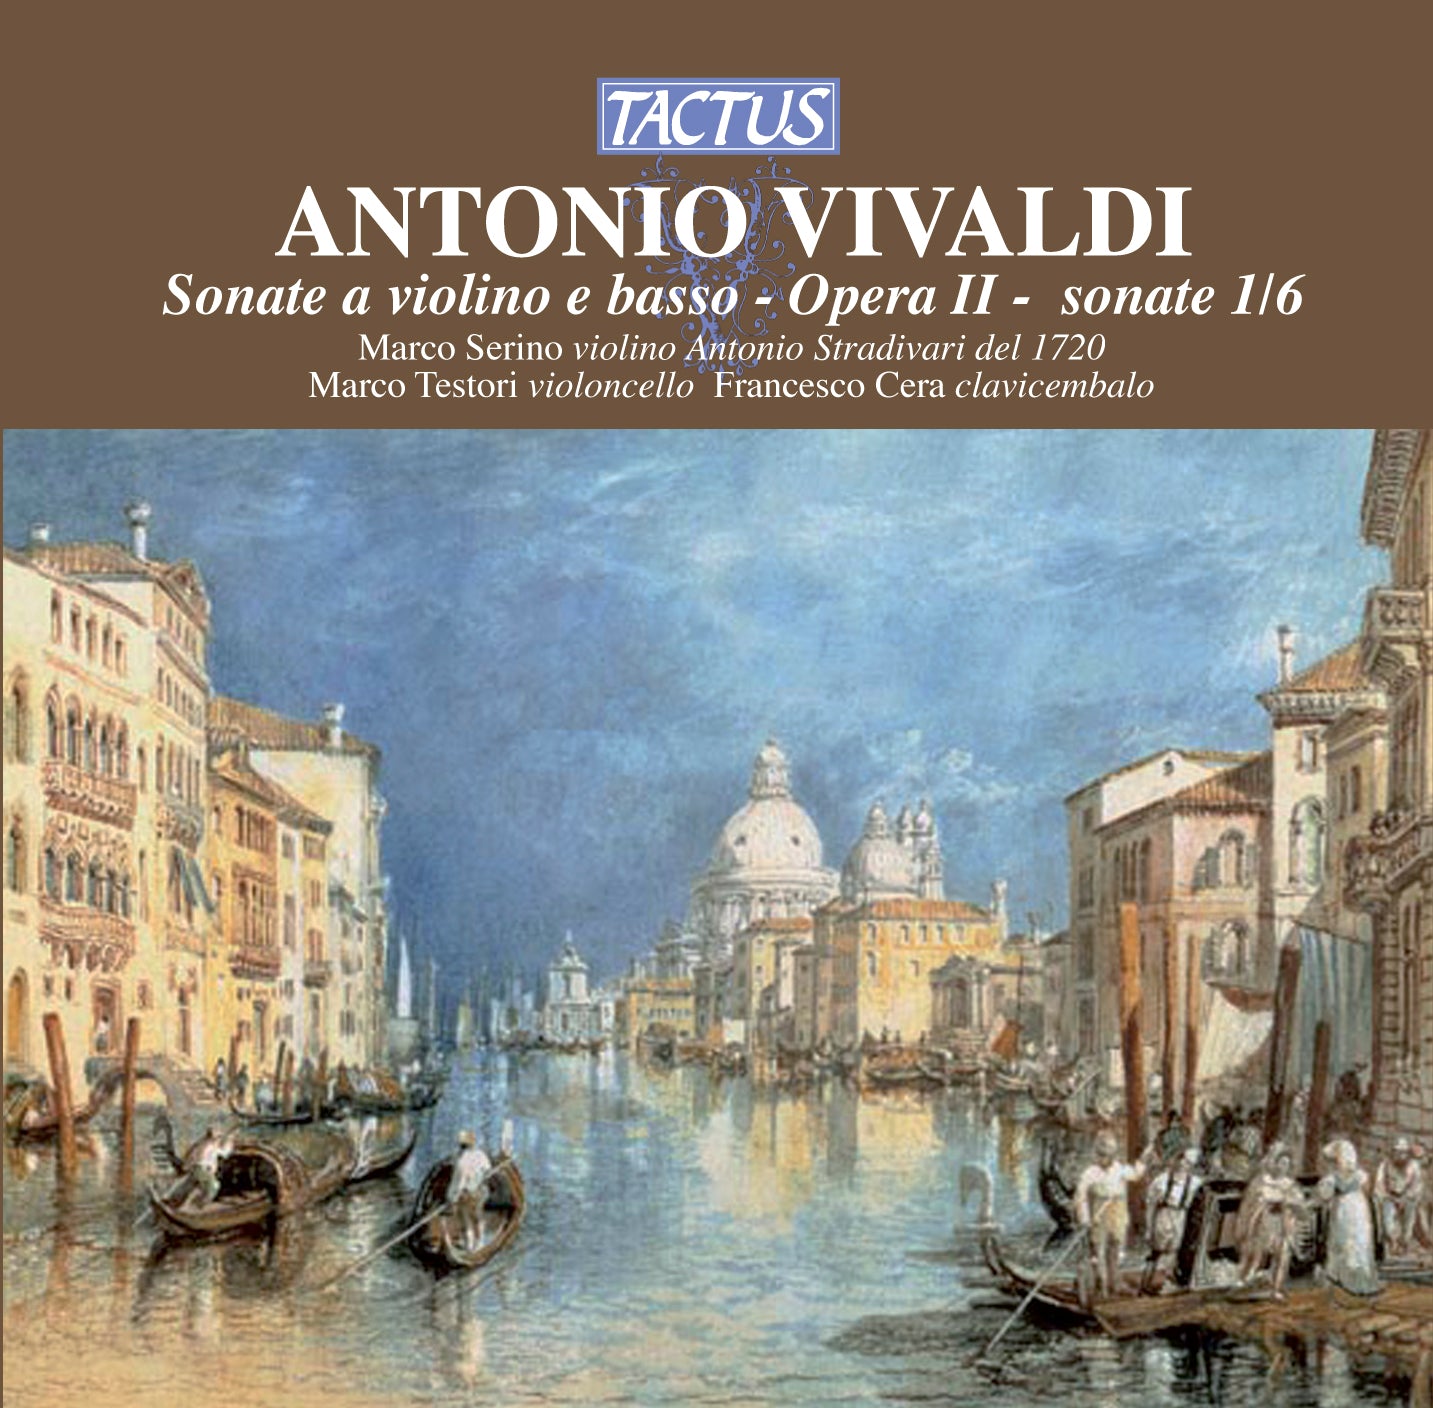 ANTONIO VIVALDI: Sonate a violino e basso, Opera II - sonate